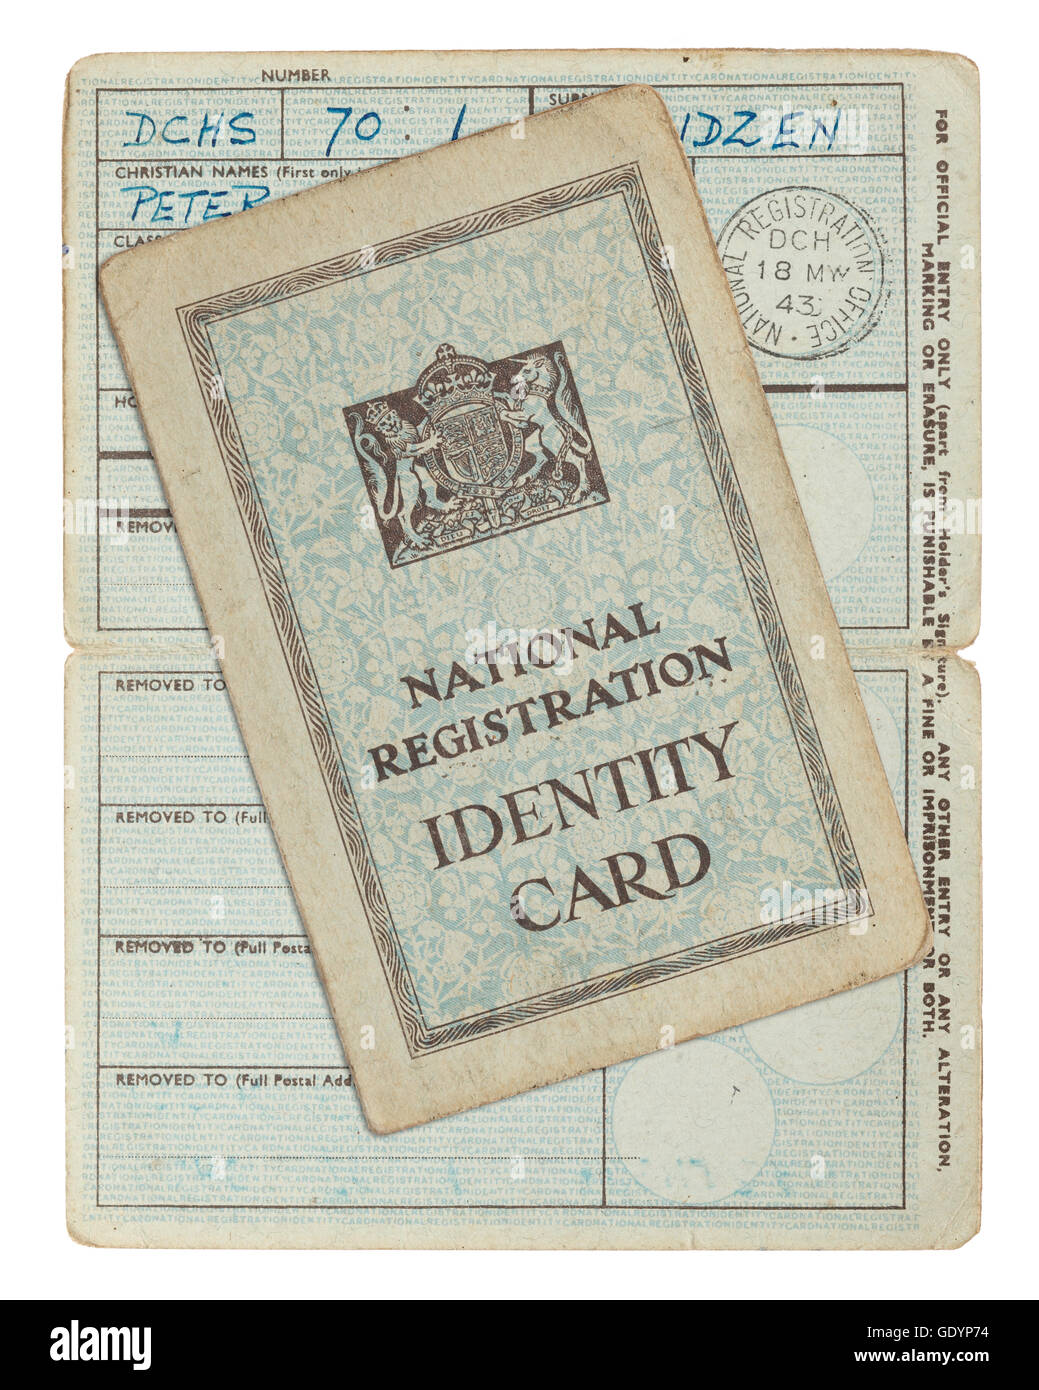 Fiche d'identité de citoyen britannique, mai 1943 Banque D'Images